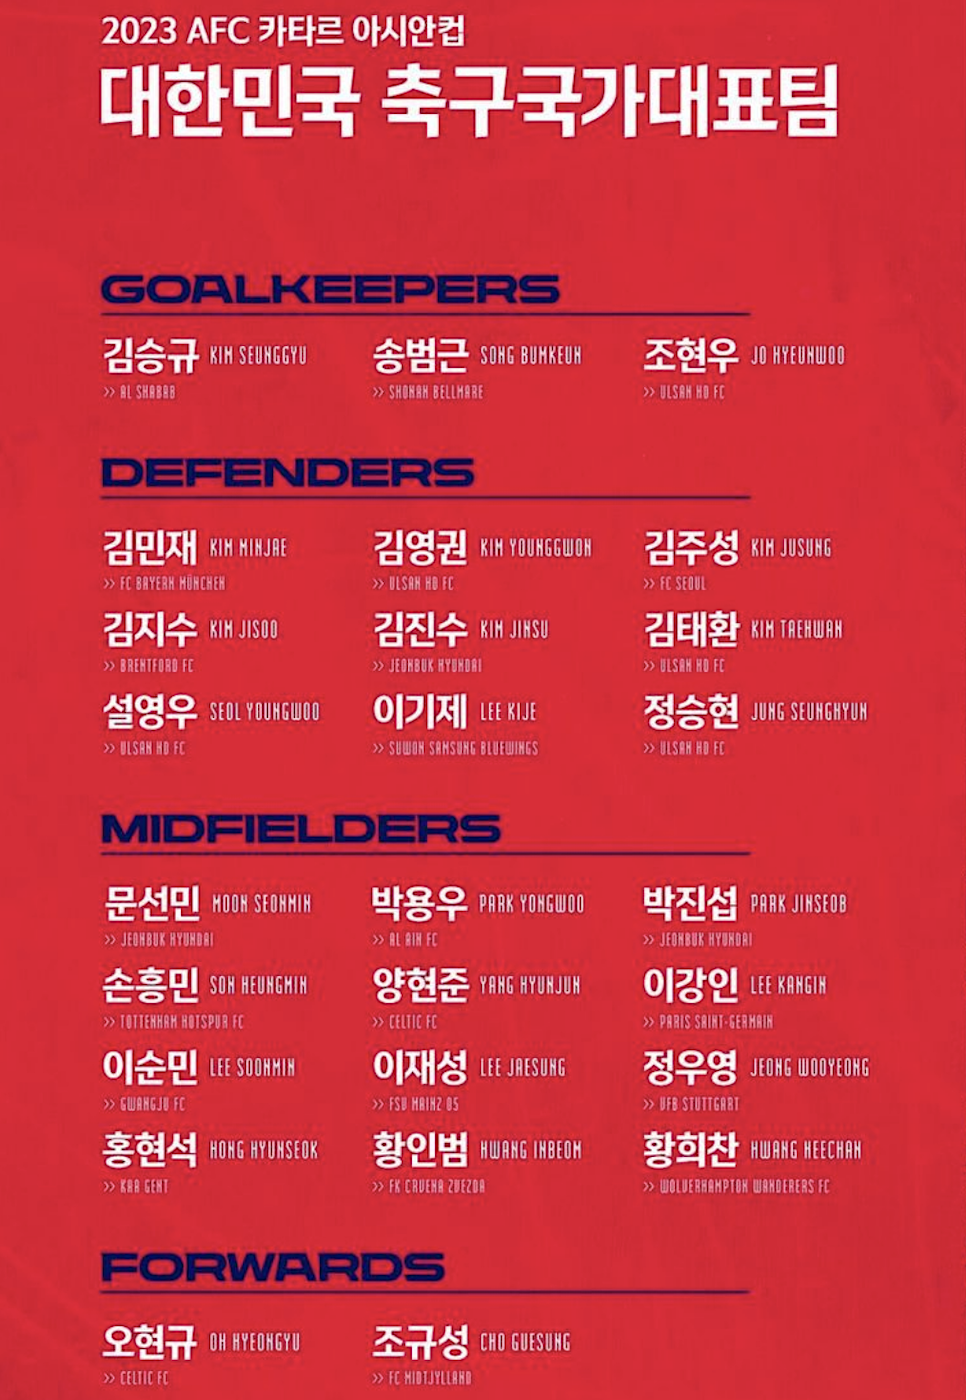 한국 요르단 축구 중계 역대 전적 심판 선발 예상 라인업 피파랭킹